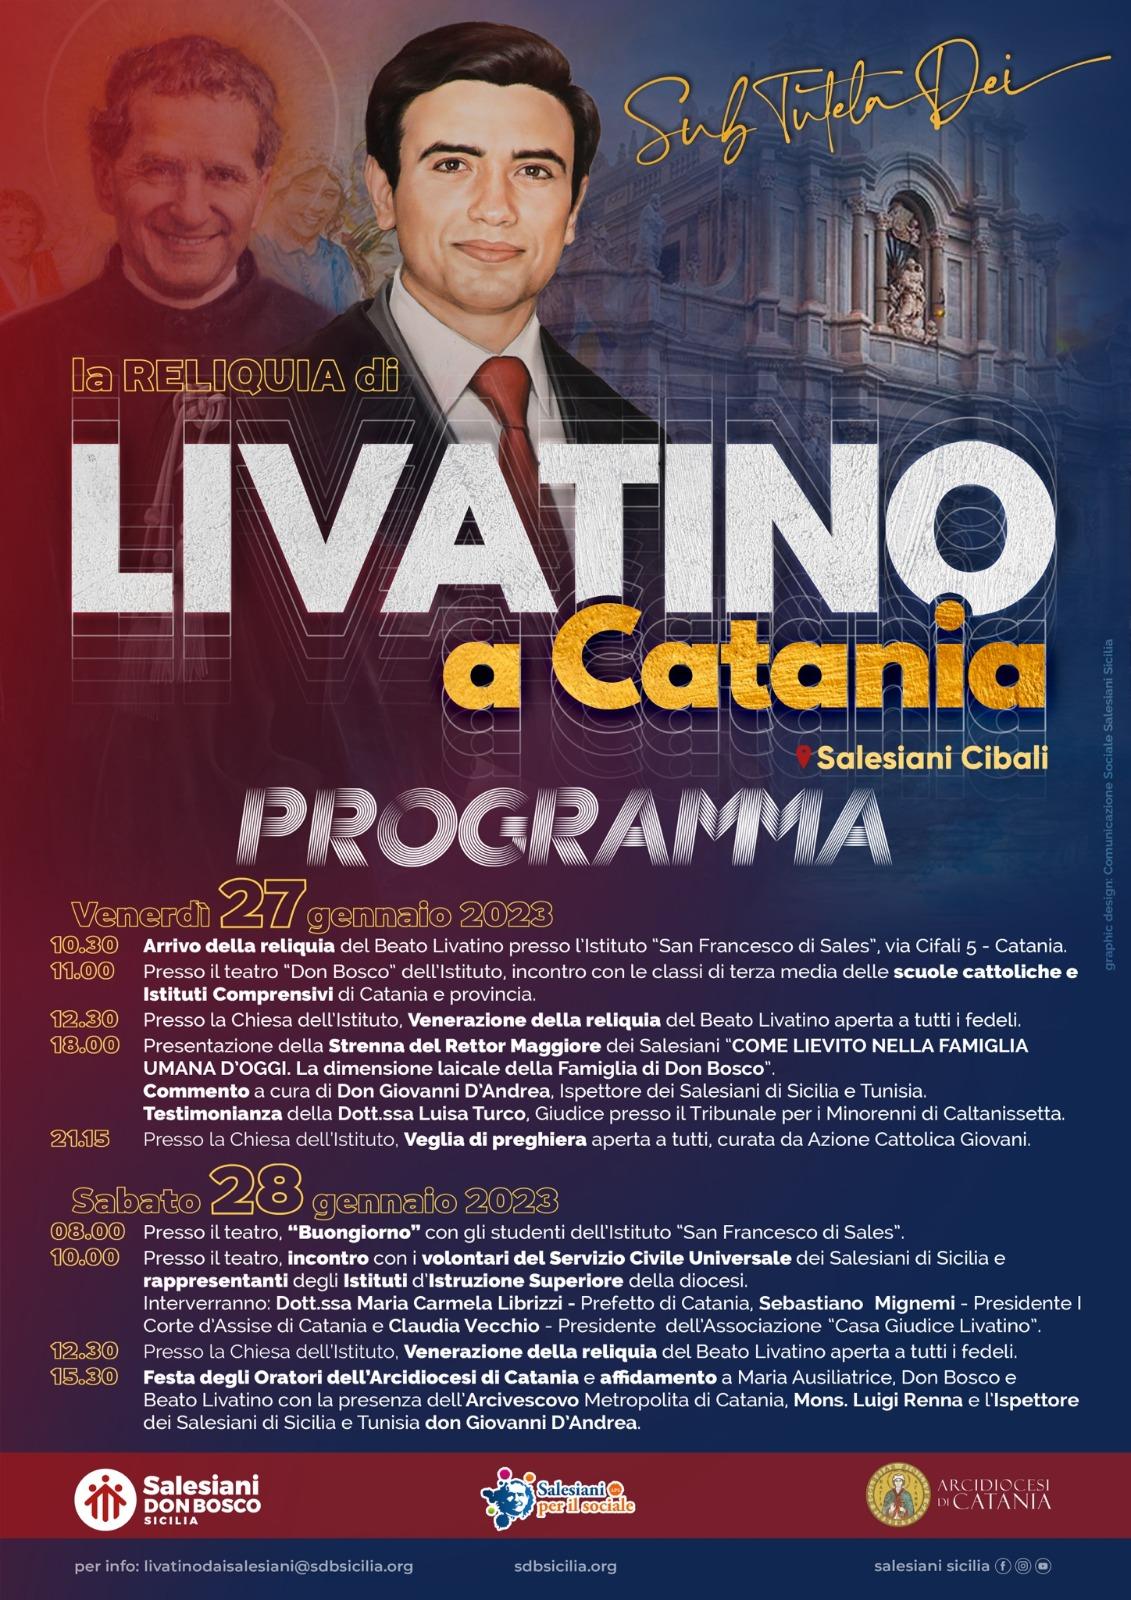 La Reliquia di Livatino a Catania dai Salesiani - Sicilia Oggi Notizie